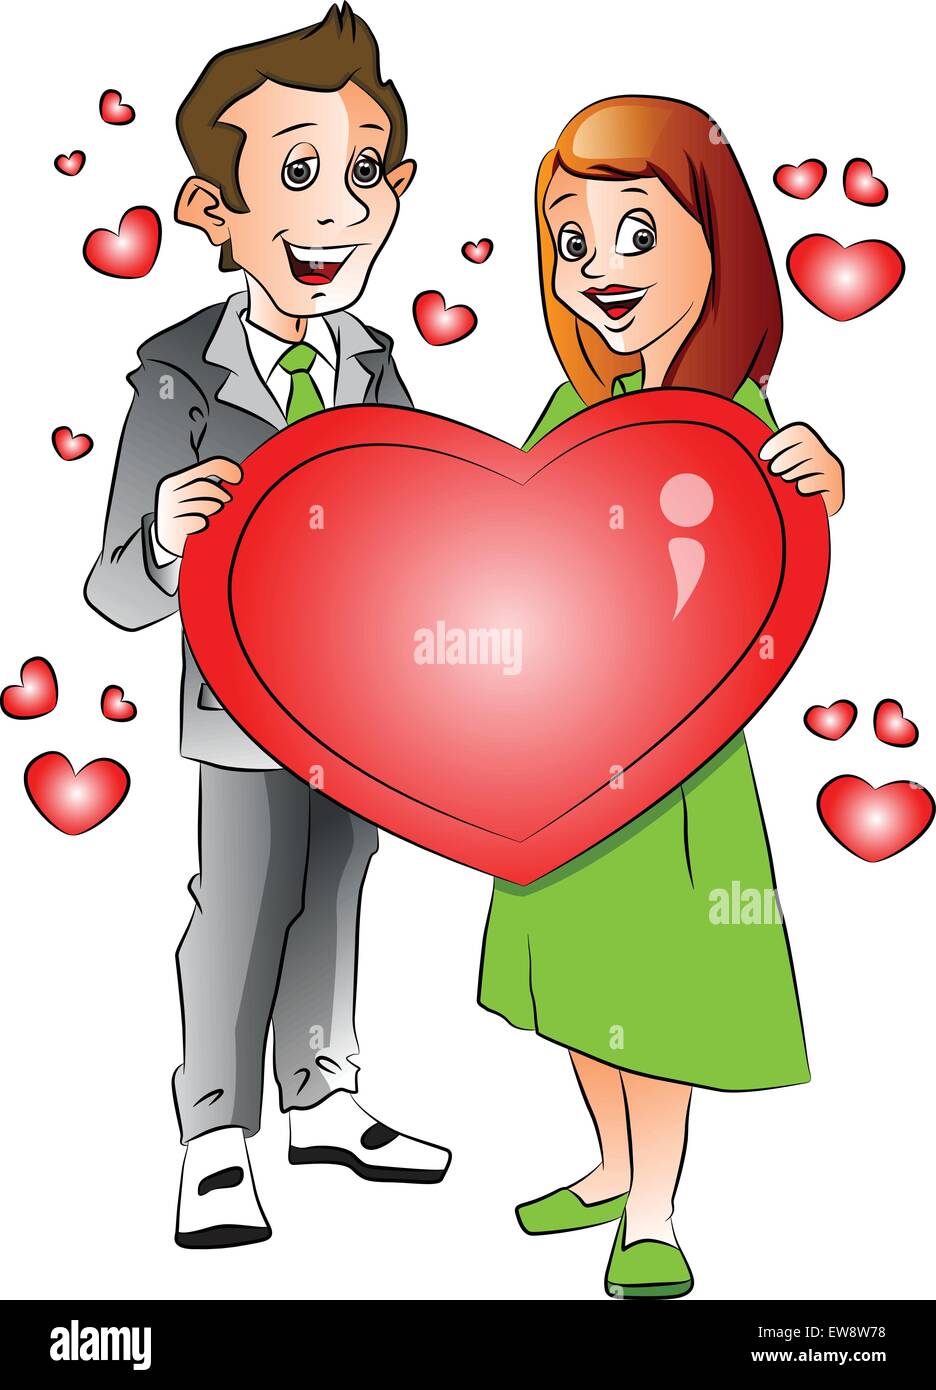 Vektor-Illustration von fröhlichen jungen Ehepaar mit roten Herzen Shape-Symbol. Stock Vektor